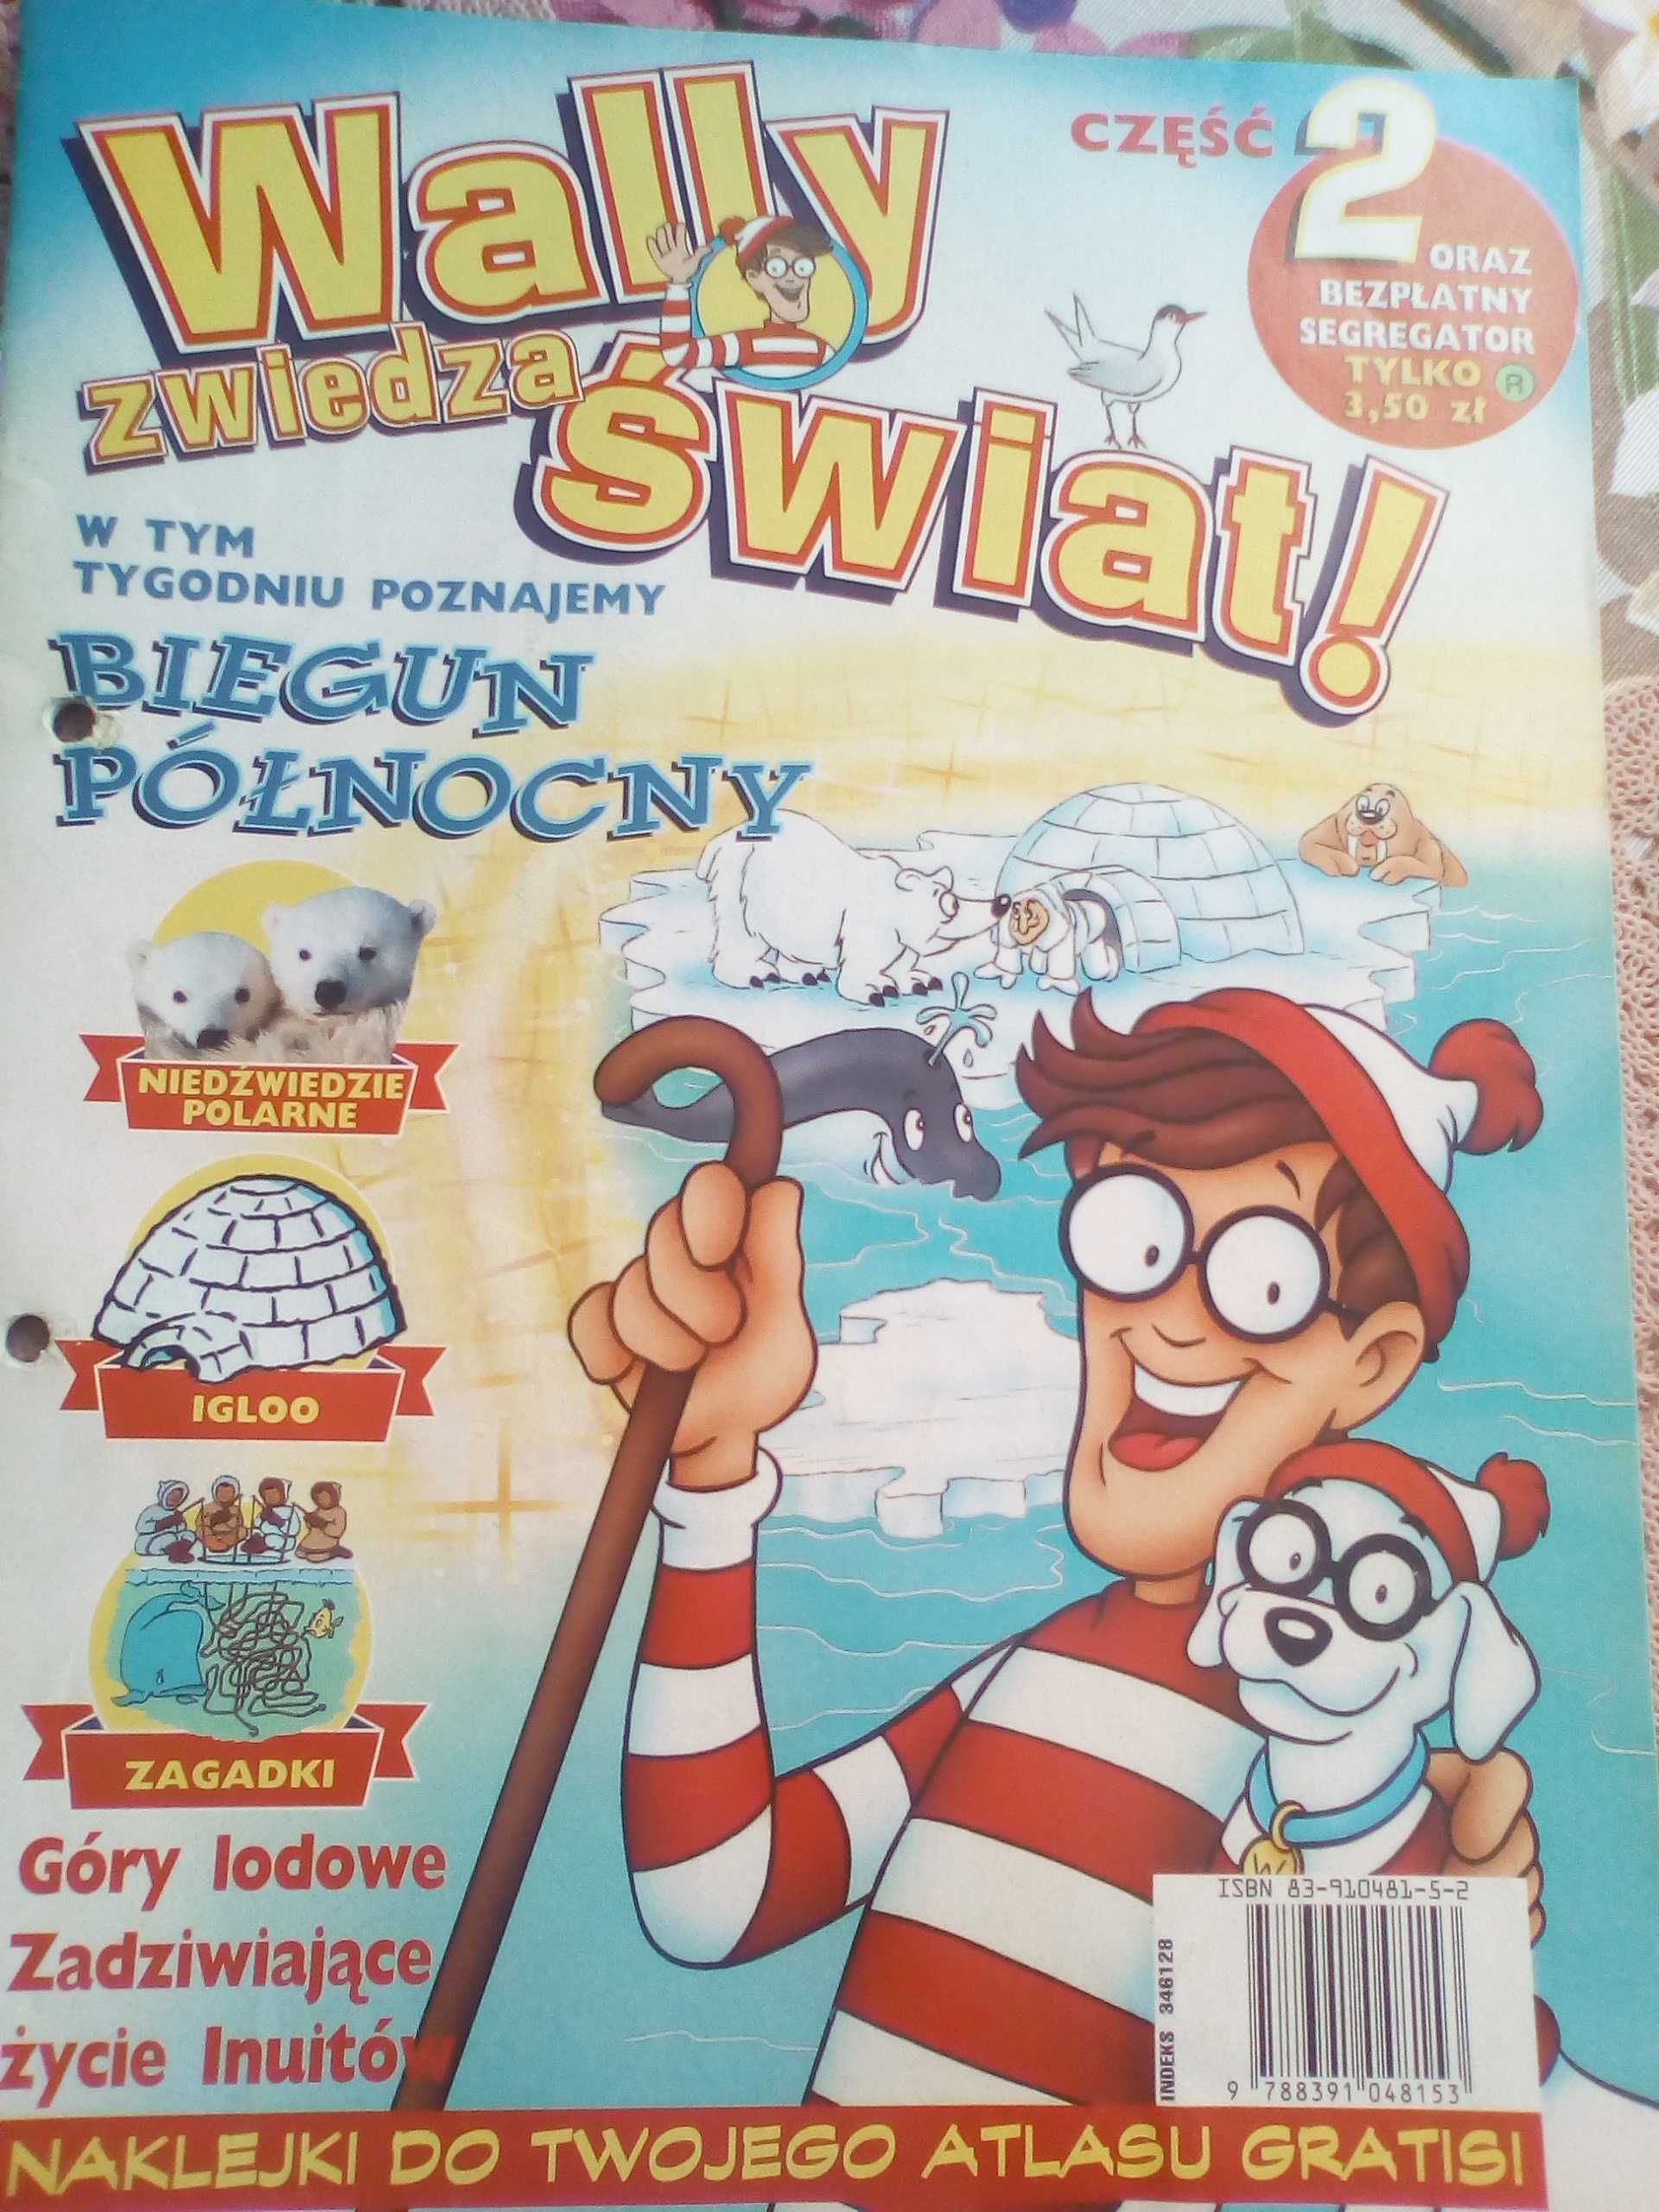 Wally zwiedza świat nr 2 /1998 - Biegun Północny